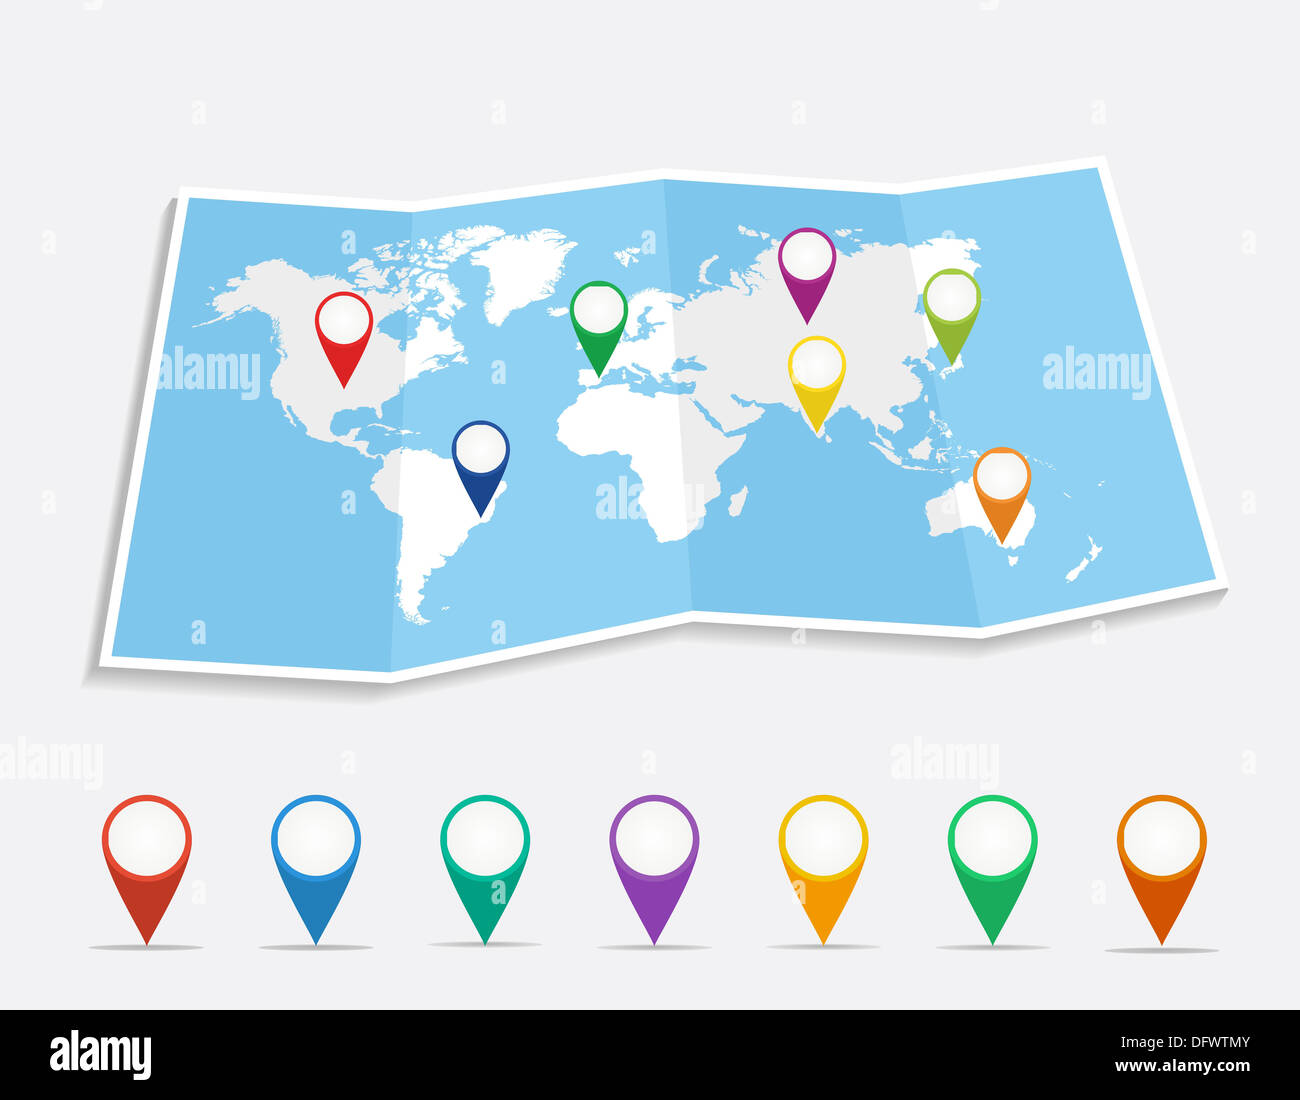 Weltkarte mit Geo Position Pins Reisen Elemente-Zusammensetzung. EPS10 Vektor-Datei organisiert in Schichten für die einfache Bearbeitung. Stockfoto